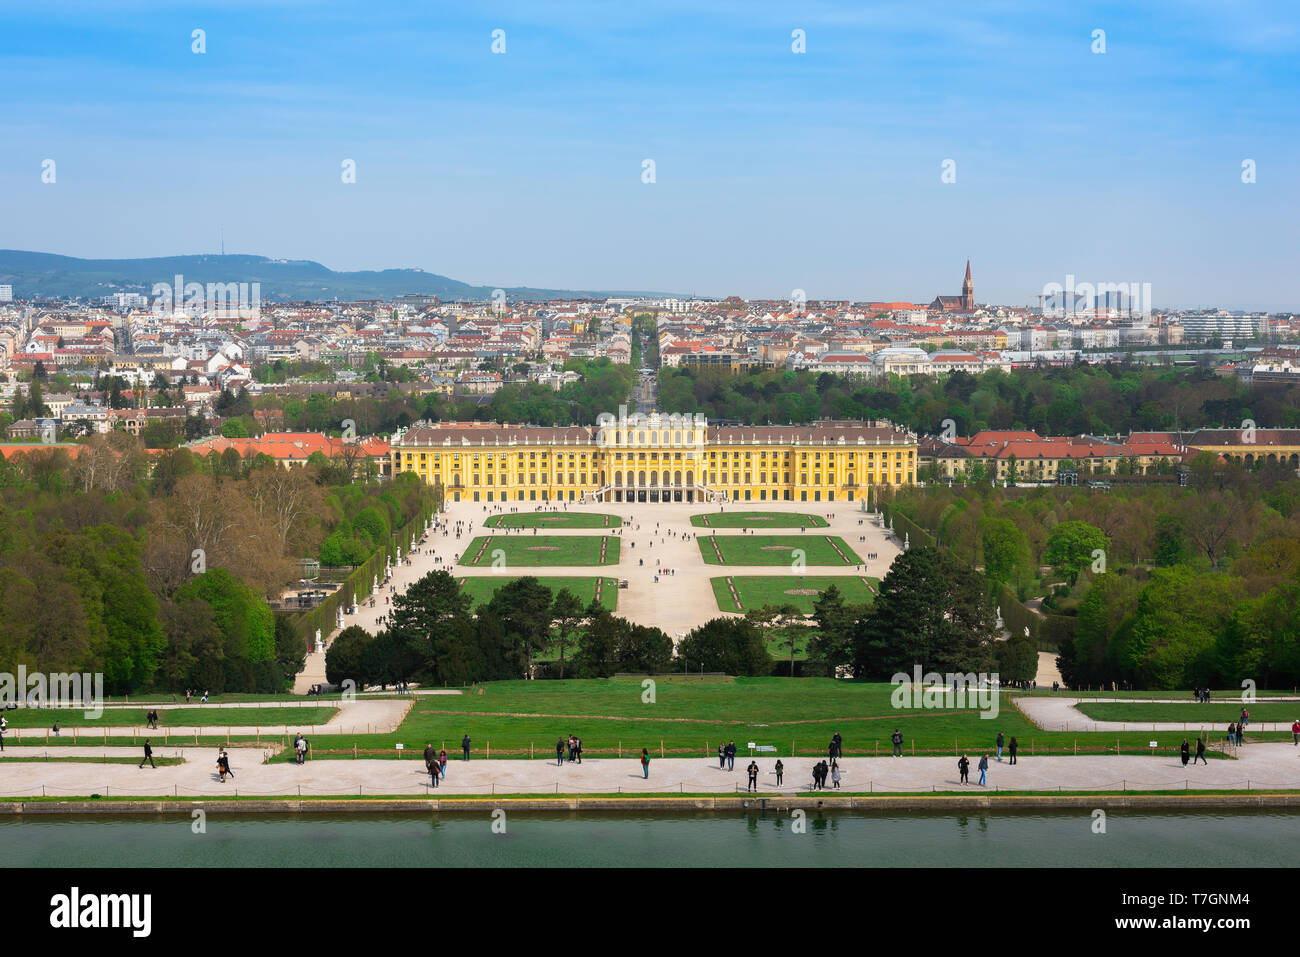 Giardino di Vienna, vista del parterre giardino barocco e esterno del lato sud di Schloss Schönbrunn Palace di Vienna in Austria. Foto Stock